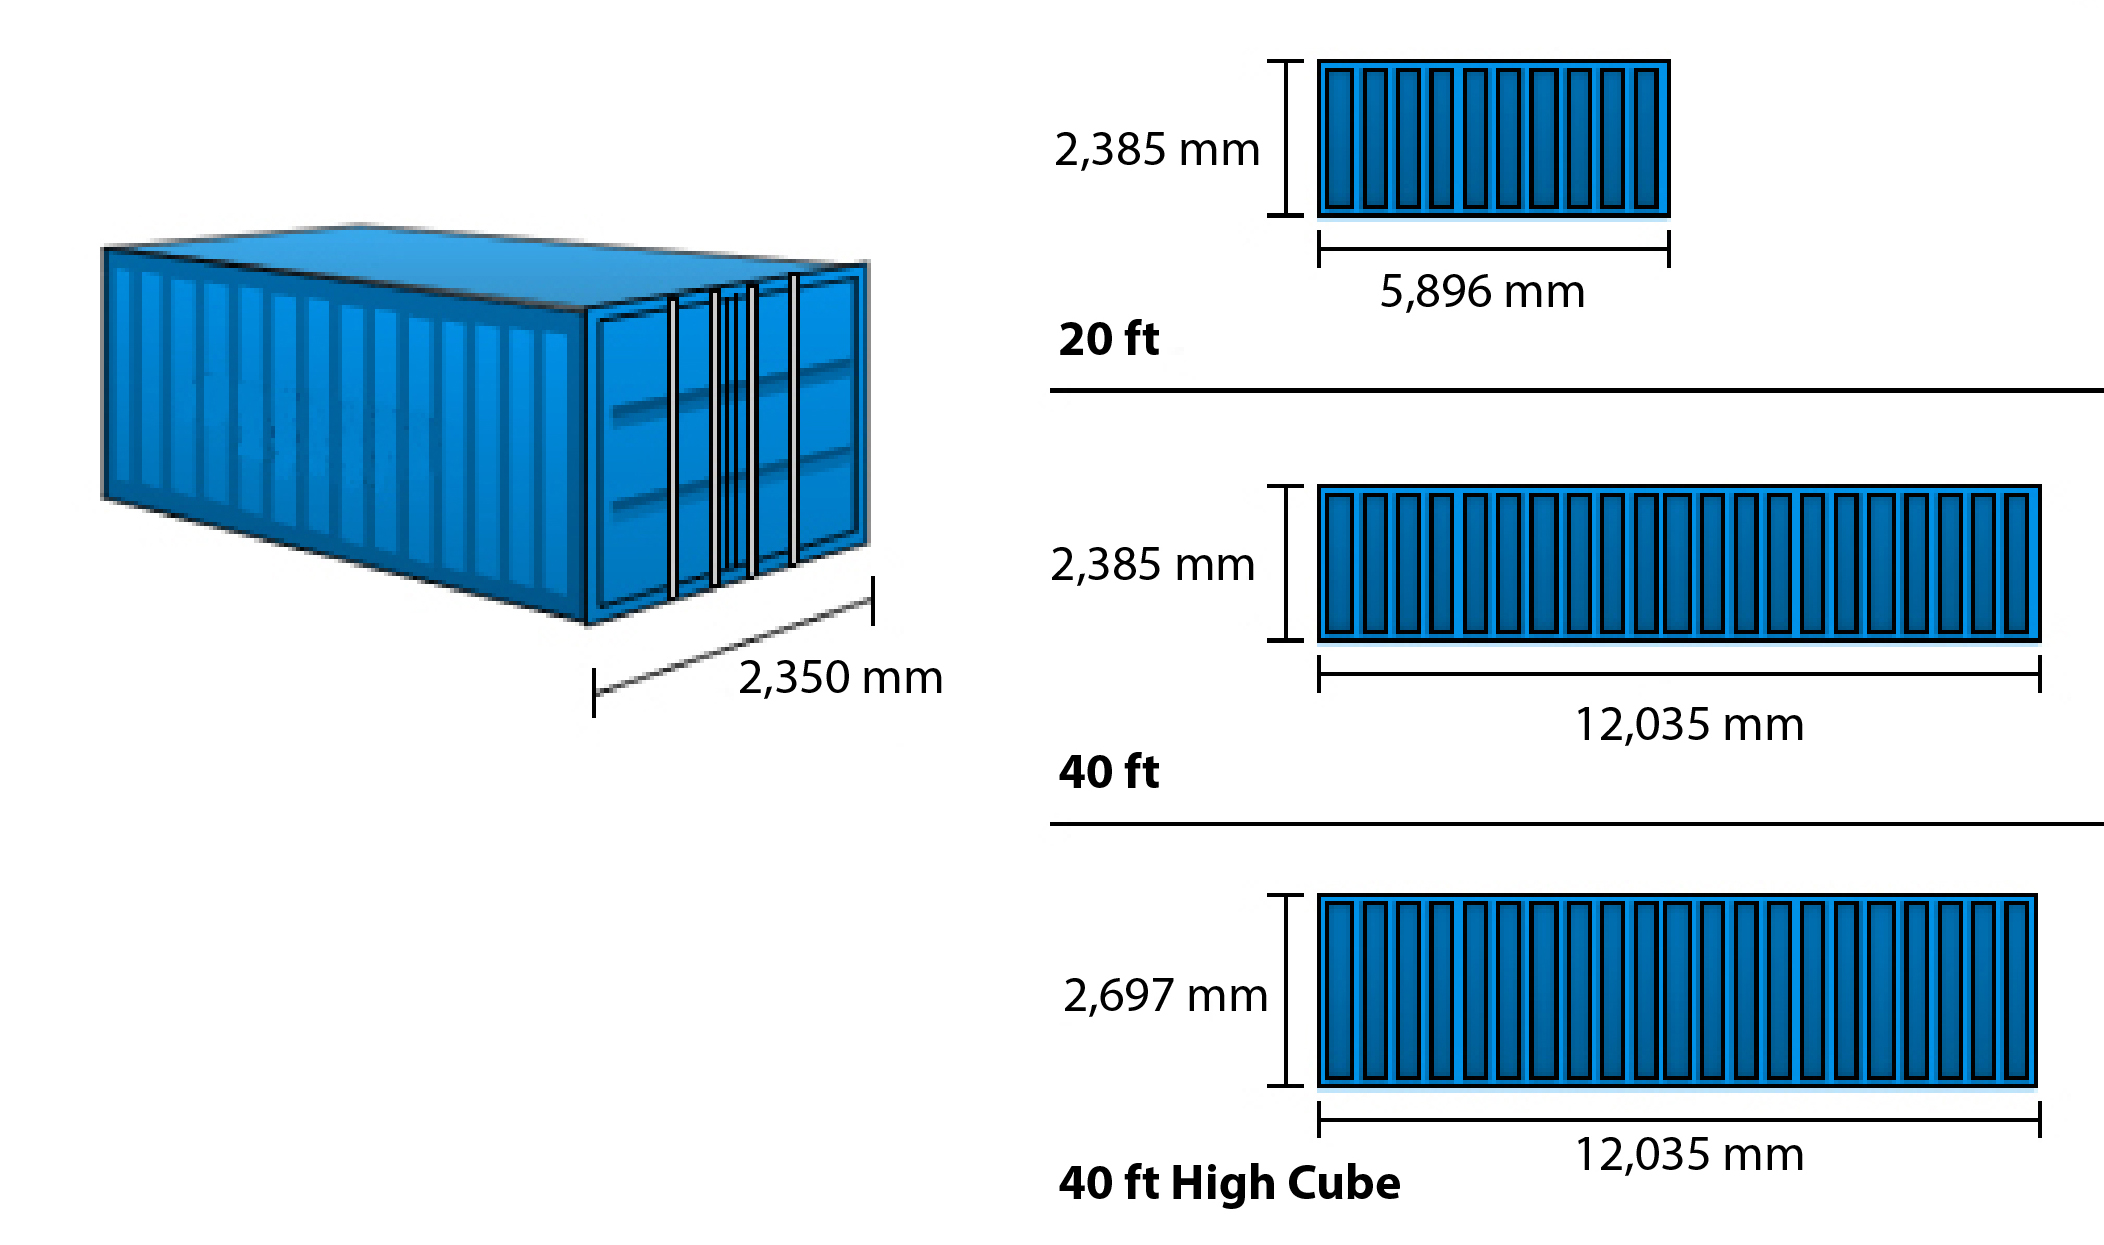 Selecteer hier de gewenste containervaart en ontvang gelijk de absoluut laagste all-in prijs middels ons online boekingsplatform. Boek direct en volg uw vracht realtime.